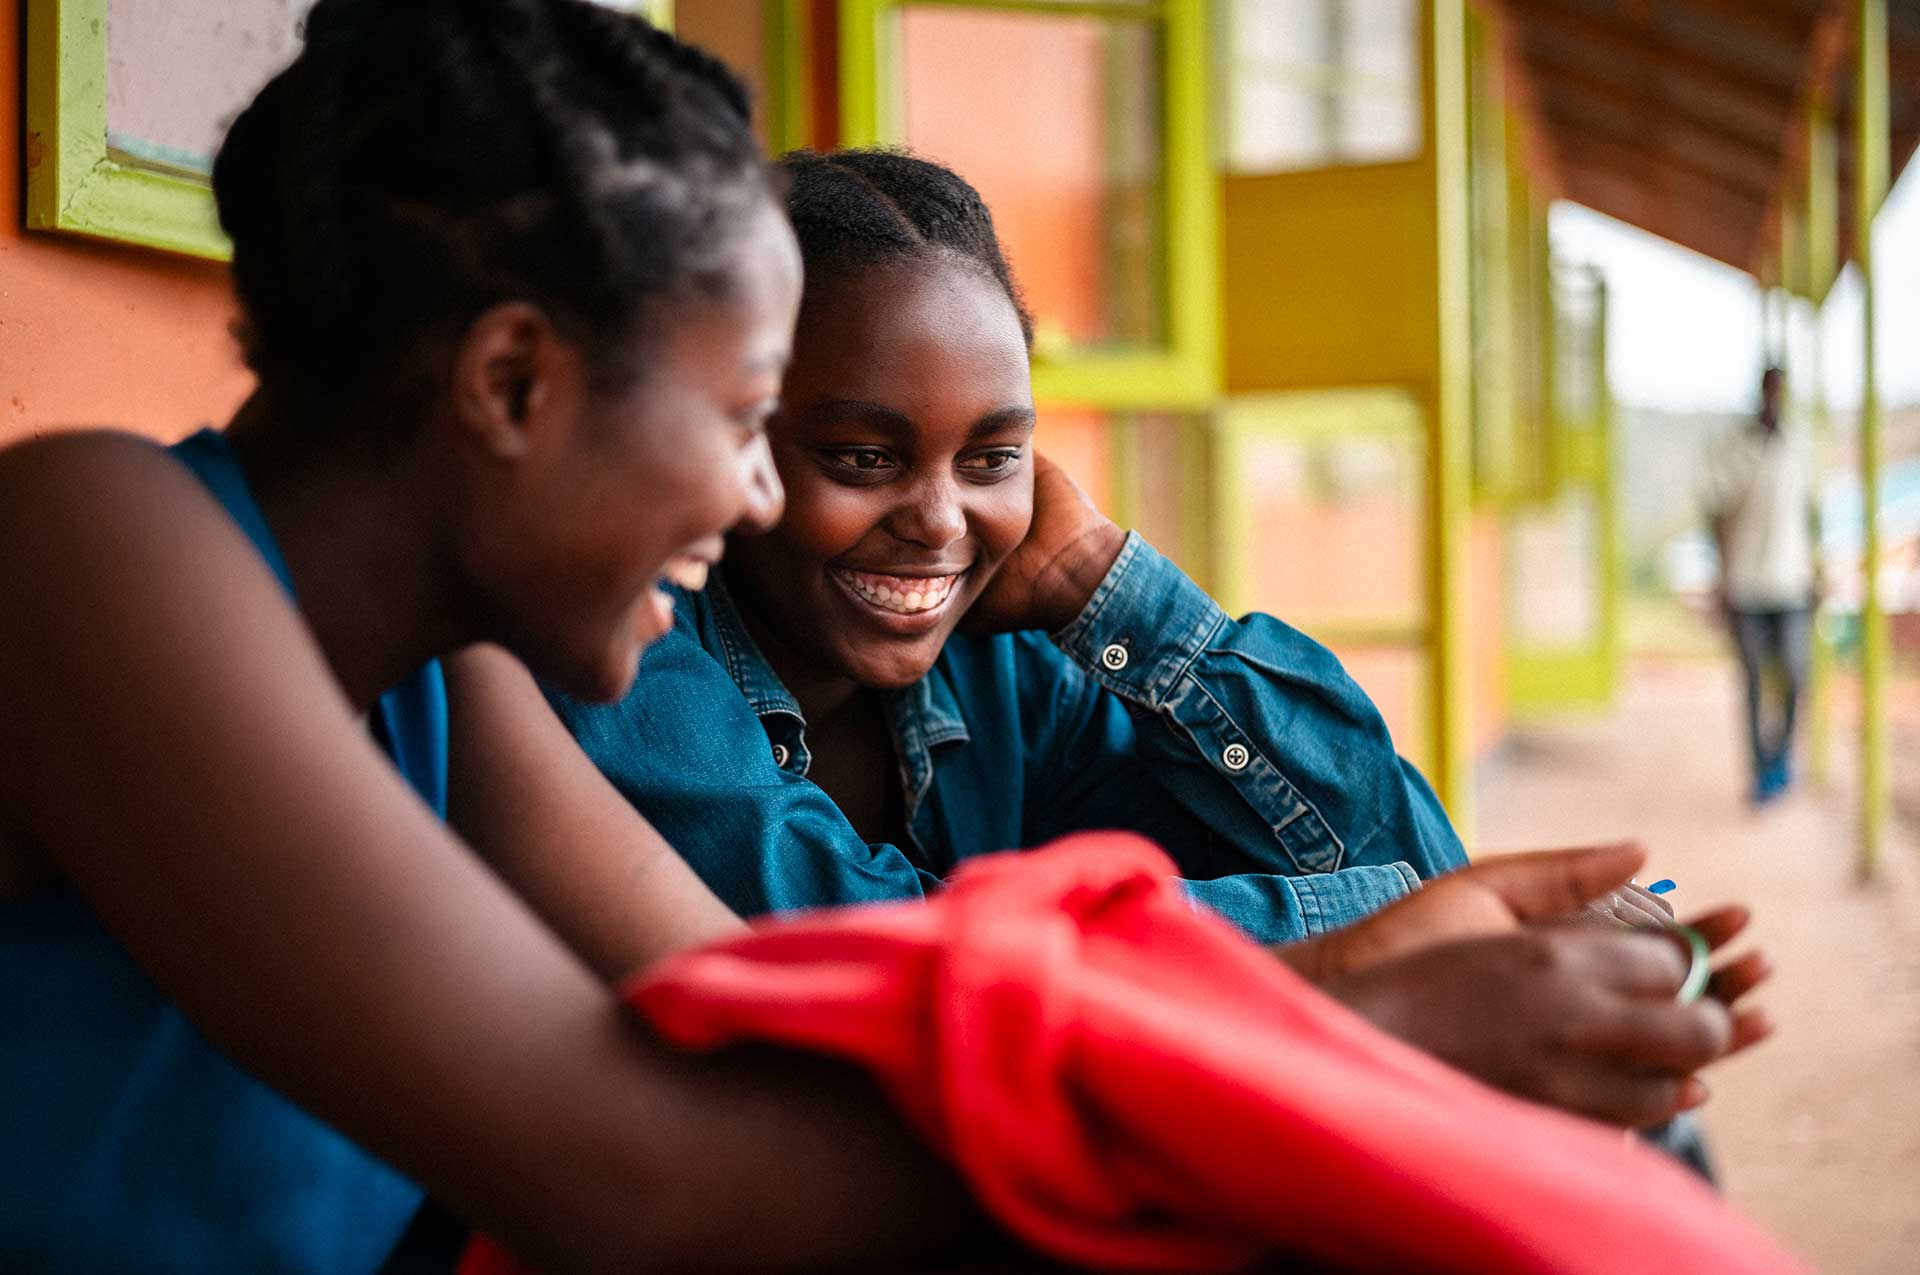 Kaksi kongolaista tyttöä nojaa koulurakennuksen seinään ja juttelee keskenään lähikuvassa.